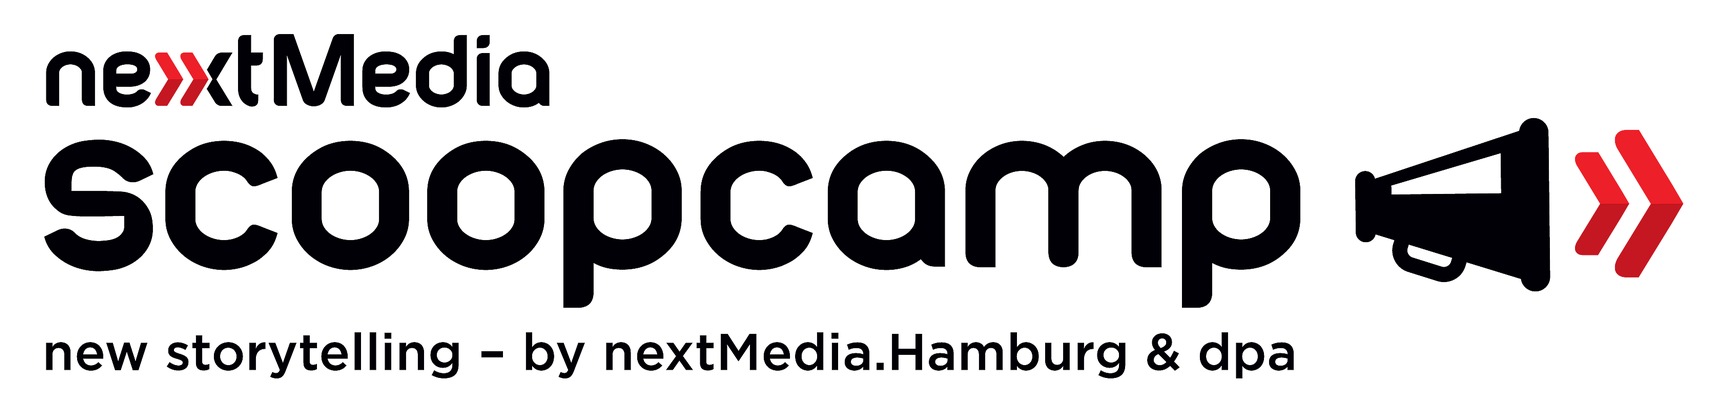 scoopcamp 2017 - Digitale Transformation auf internationalem Top-Niveau / Programm der Innovationskonferenz für Medien ist vollständig (FOTO)